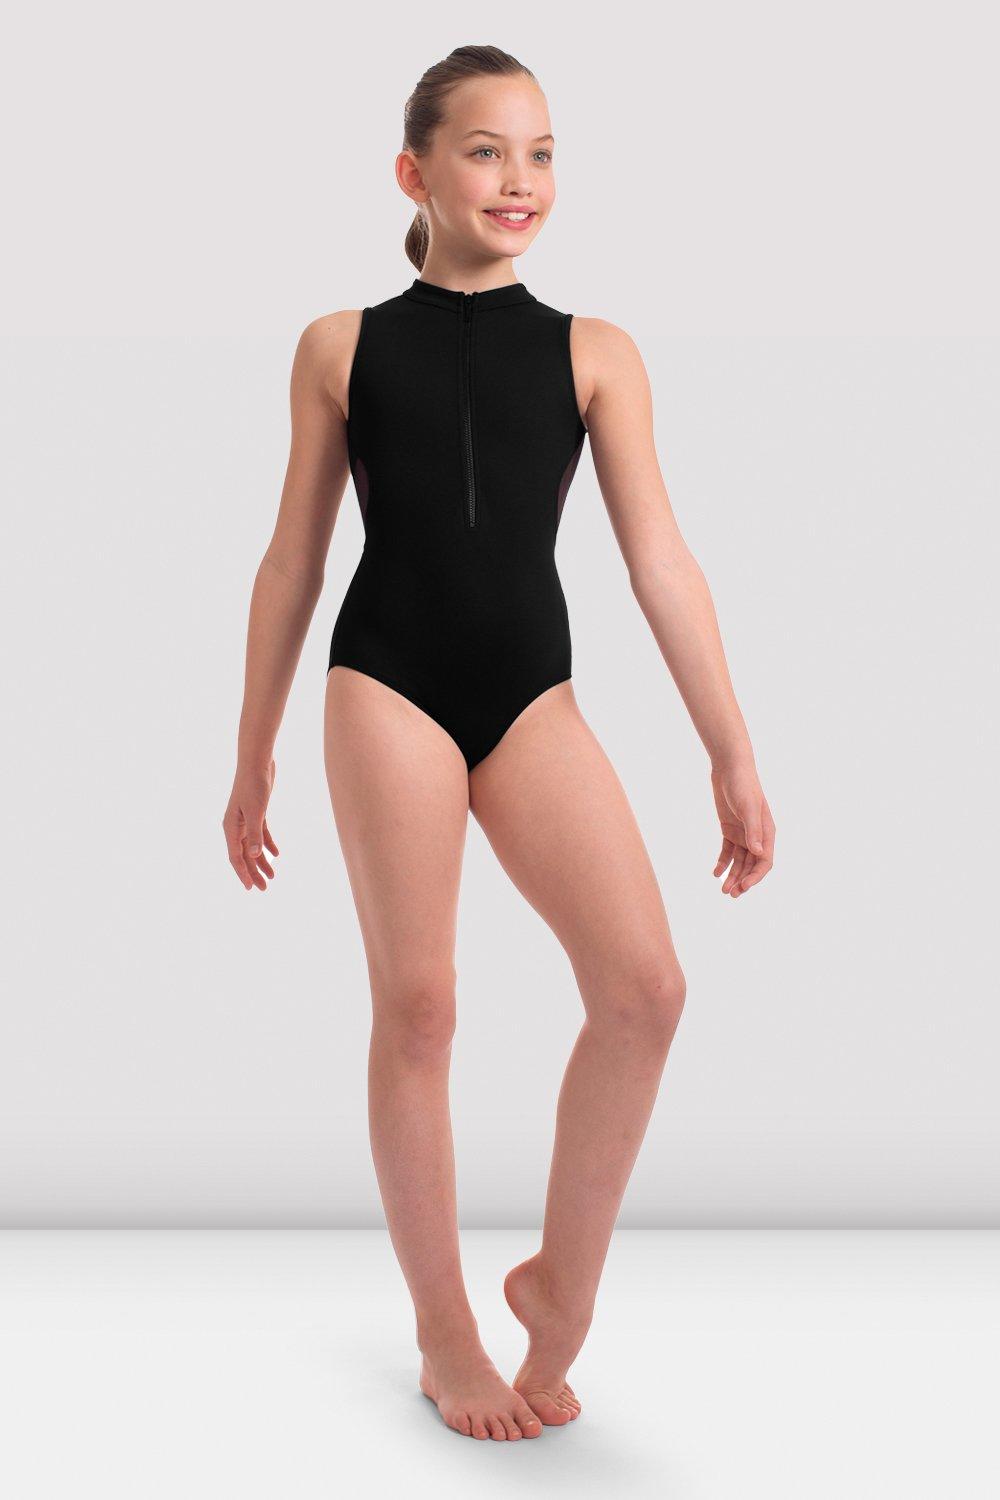 Bloch Ladies Support Brief Bodysuit M/L - Karries Kostumes & Dance